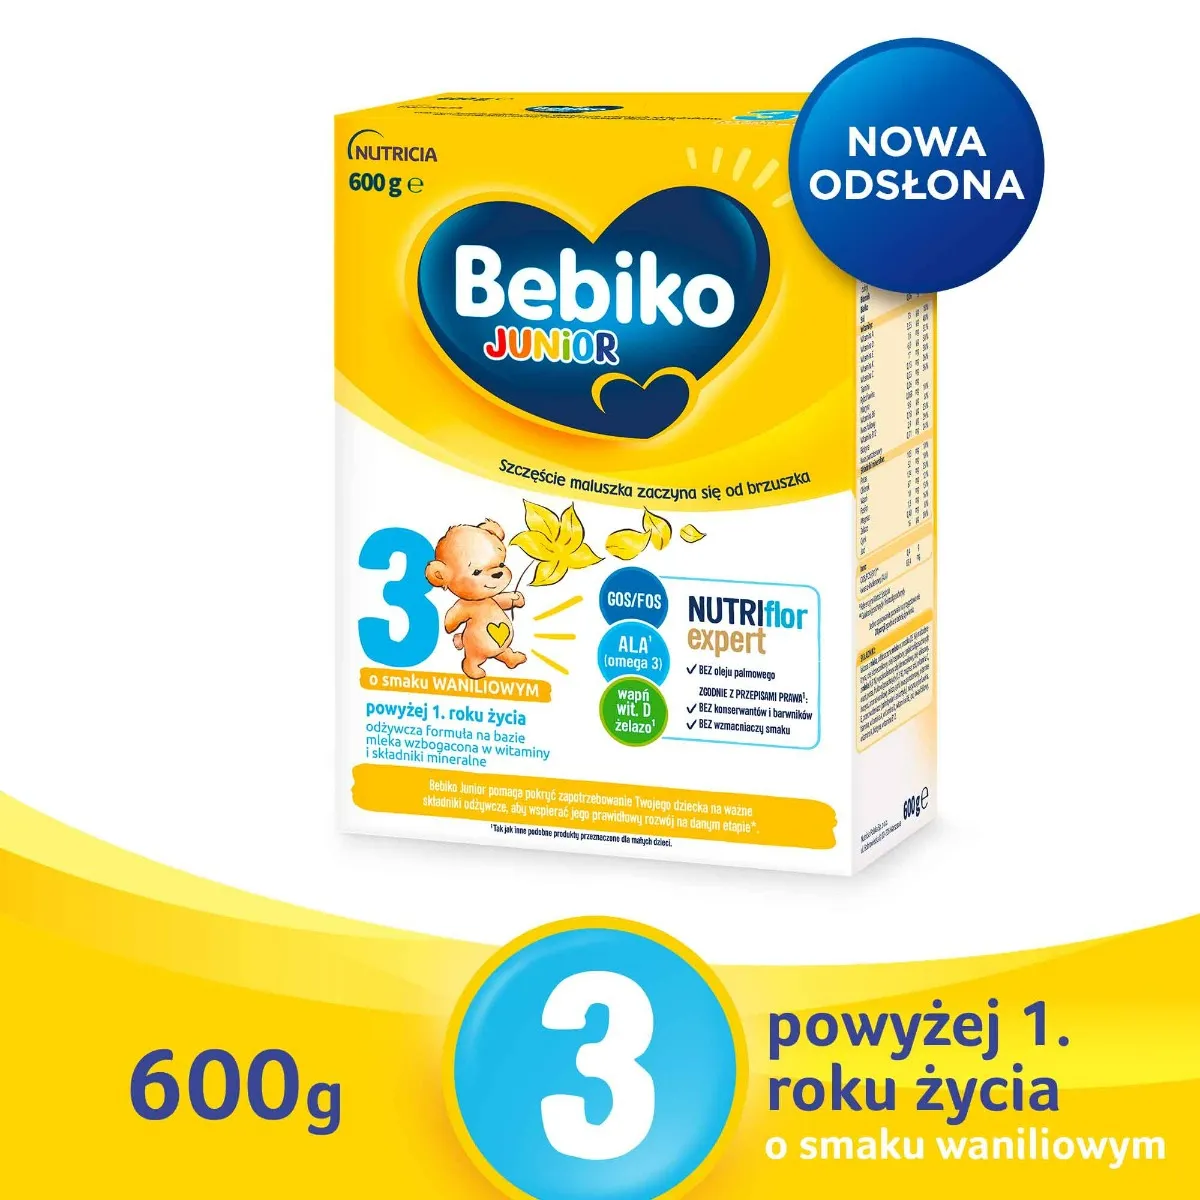 Bebiko Junior 3 Odżywcza formuła na bazie mleka dla dzieci powyżej 1. roku o smaku waniliowym, 600 g